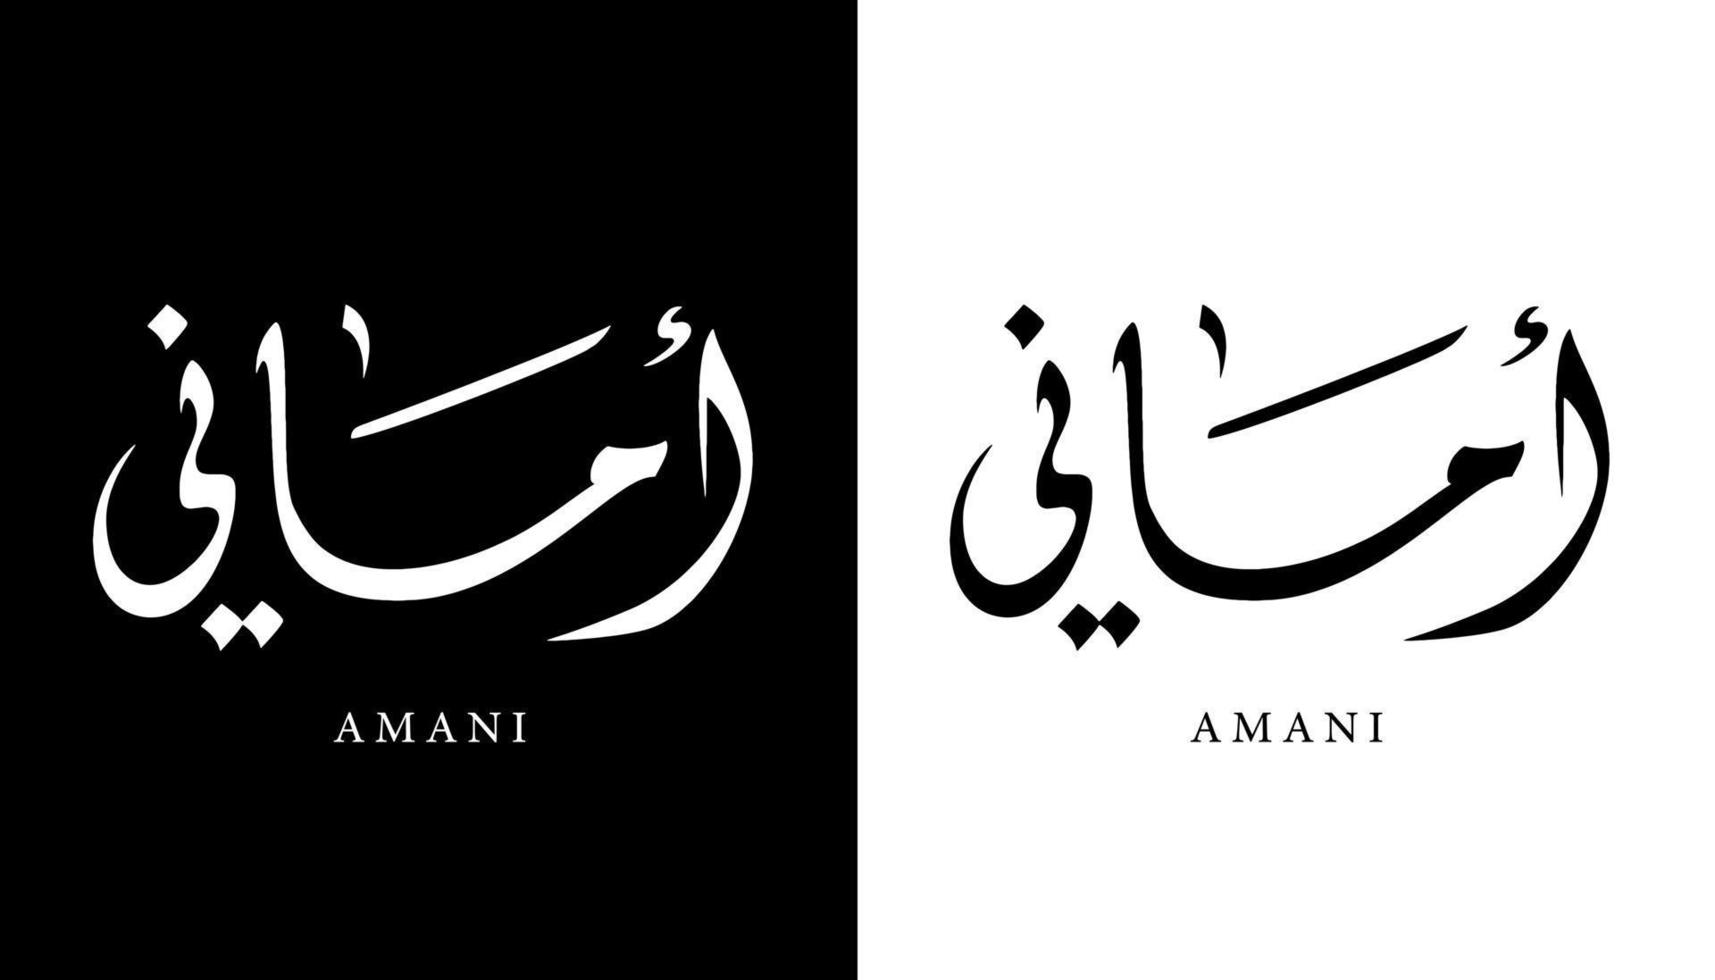 nome de caligrafia árabe traduzido 'amani' letras árabes alfabeto fonte letras ilustração em vetor logotipo islâmico